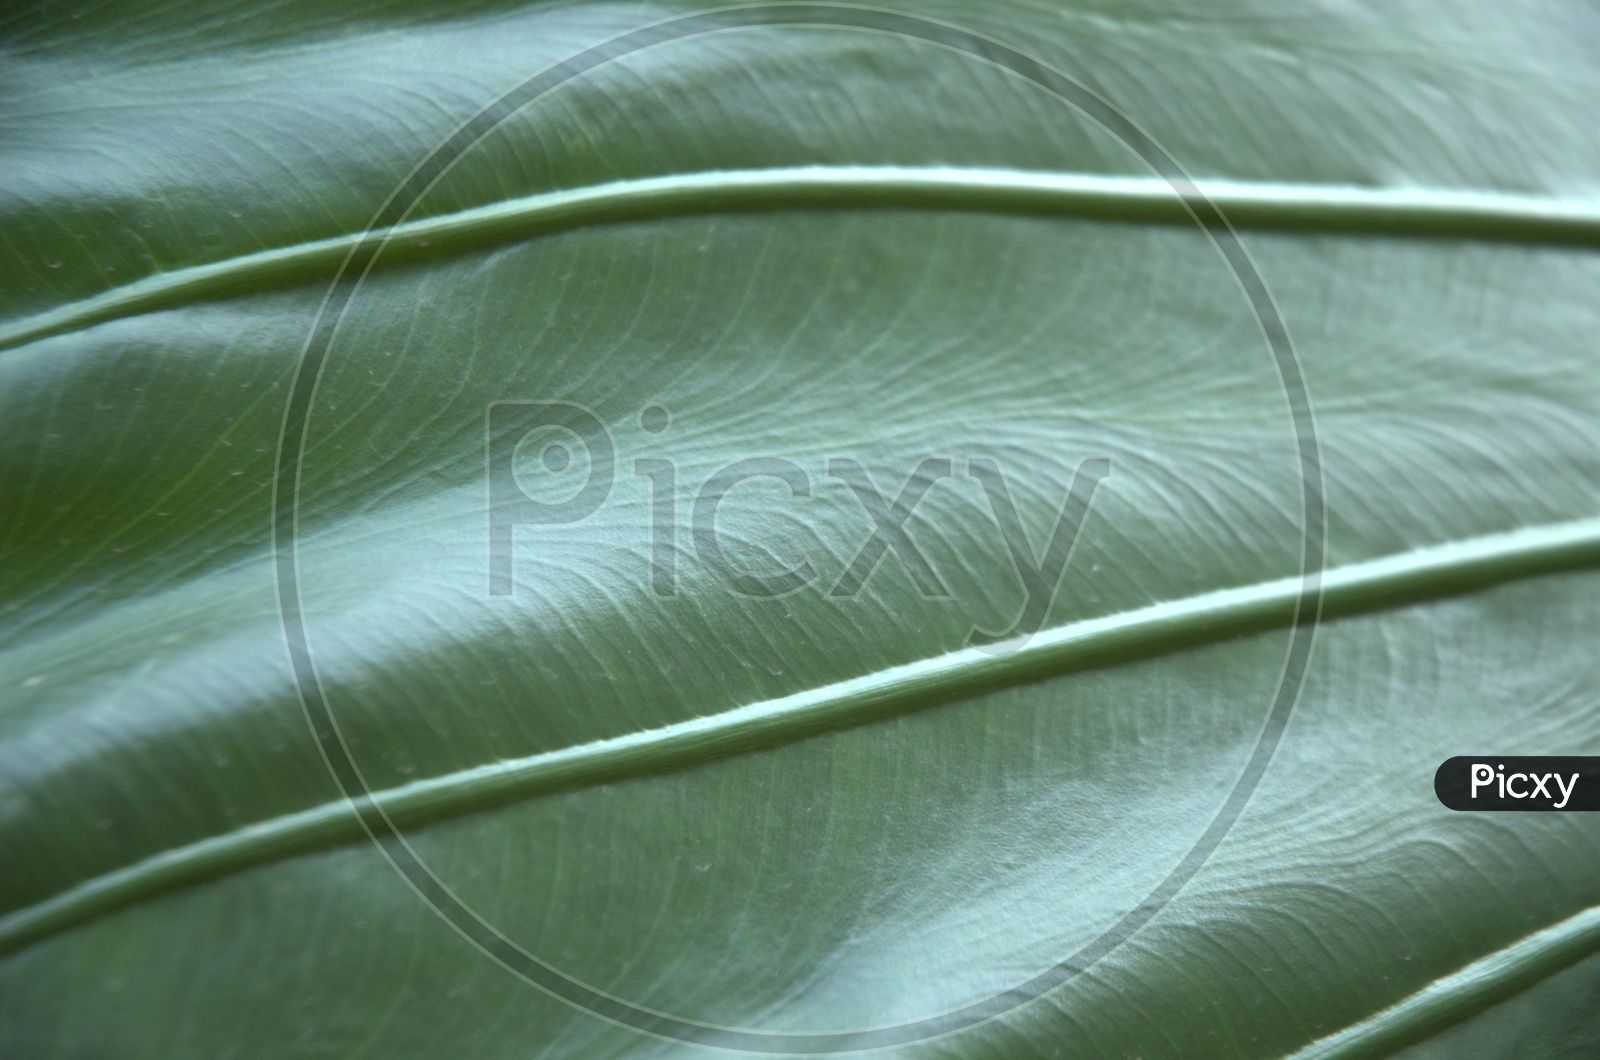 Backside veins of a green leaf